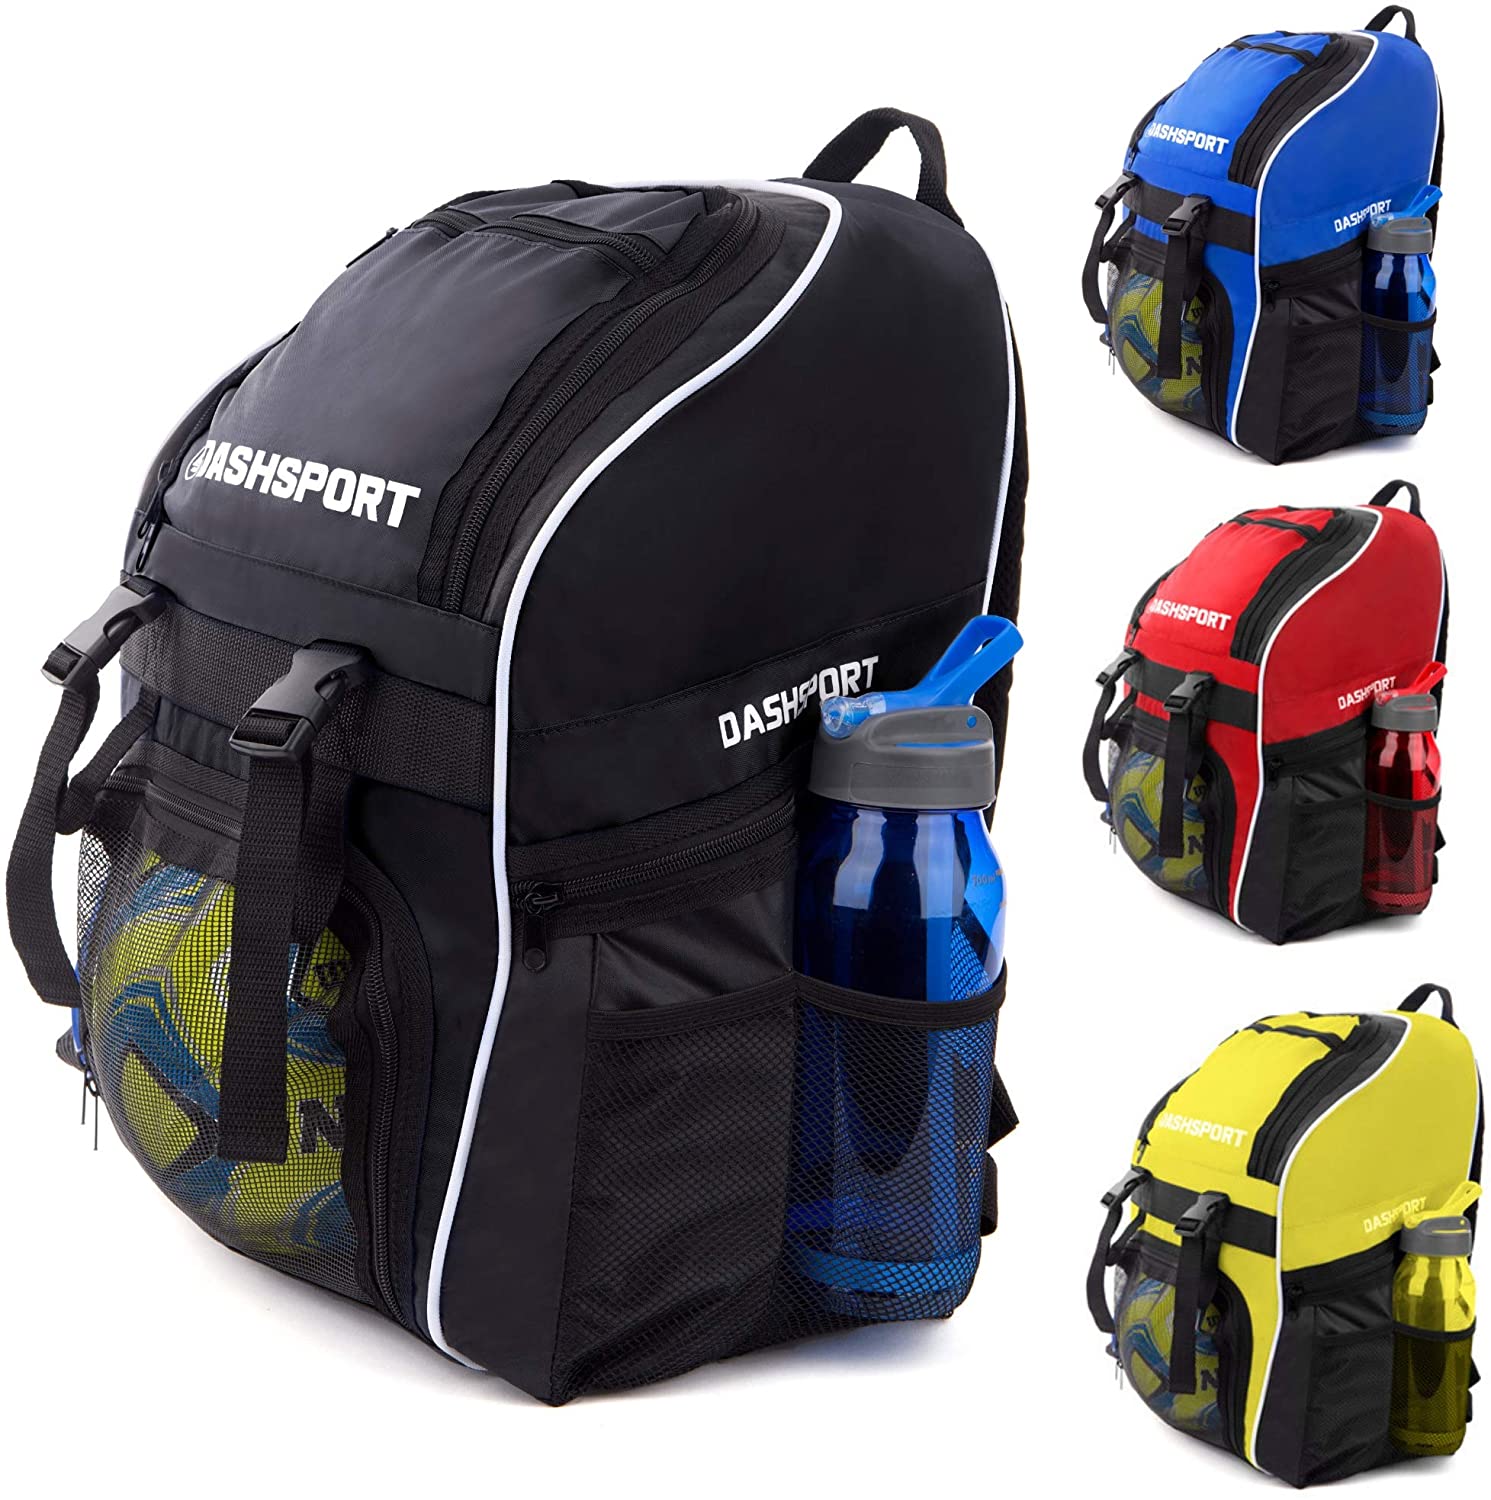 3. DashSport Soccer Backpack